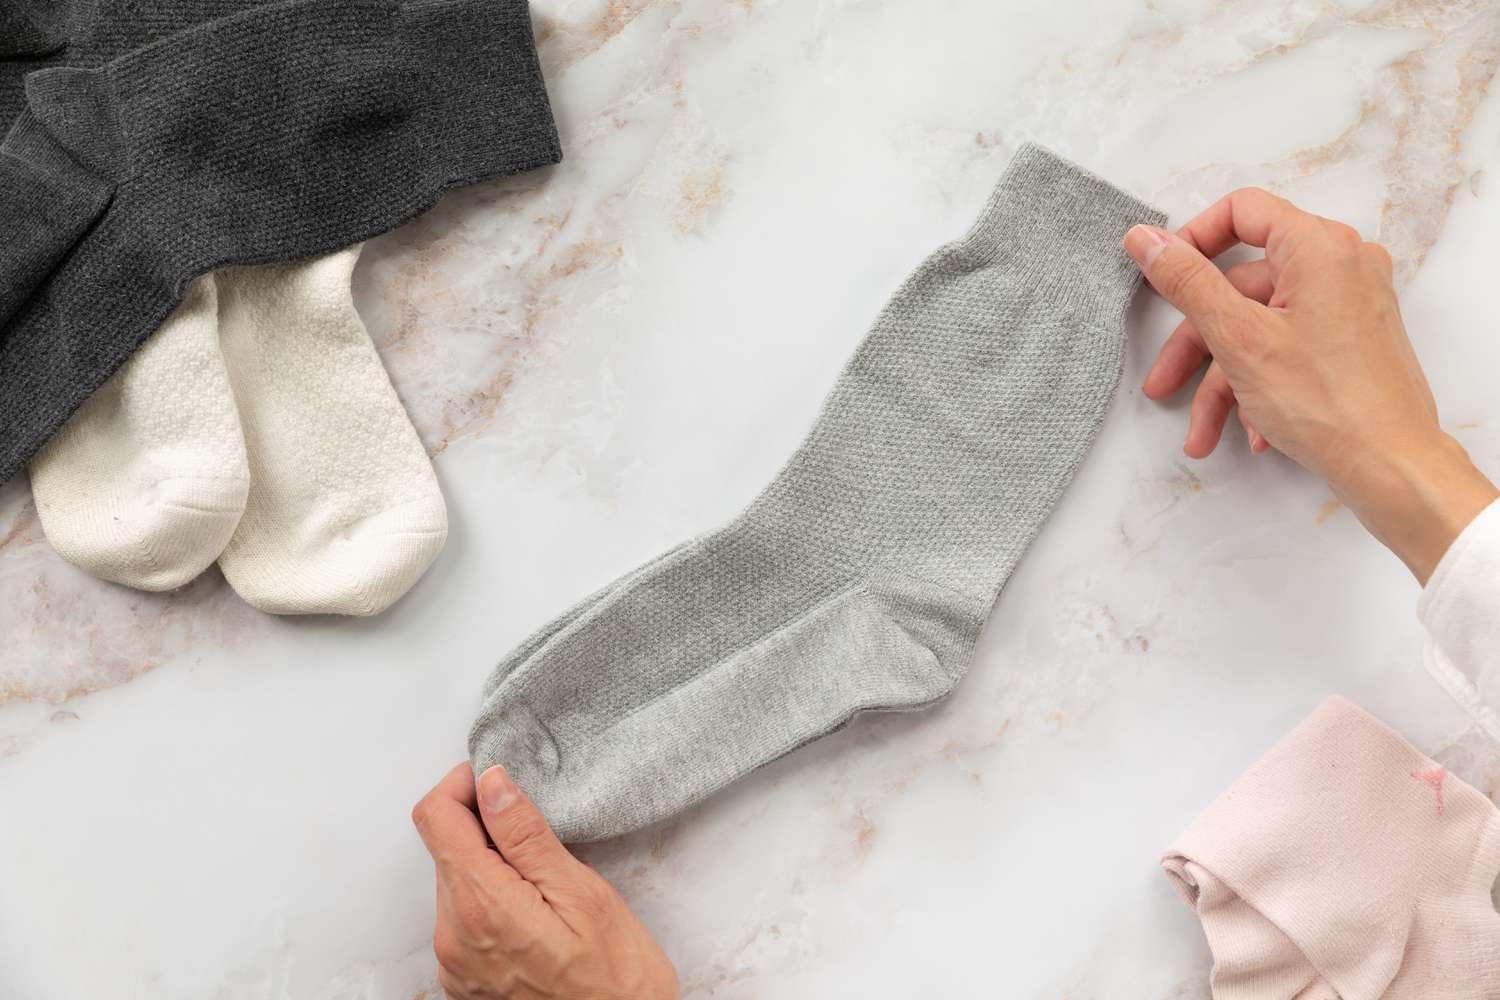 Par de calcetines grises cogidos con la mano por ambos extremos junto a otros calcetines